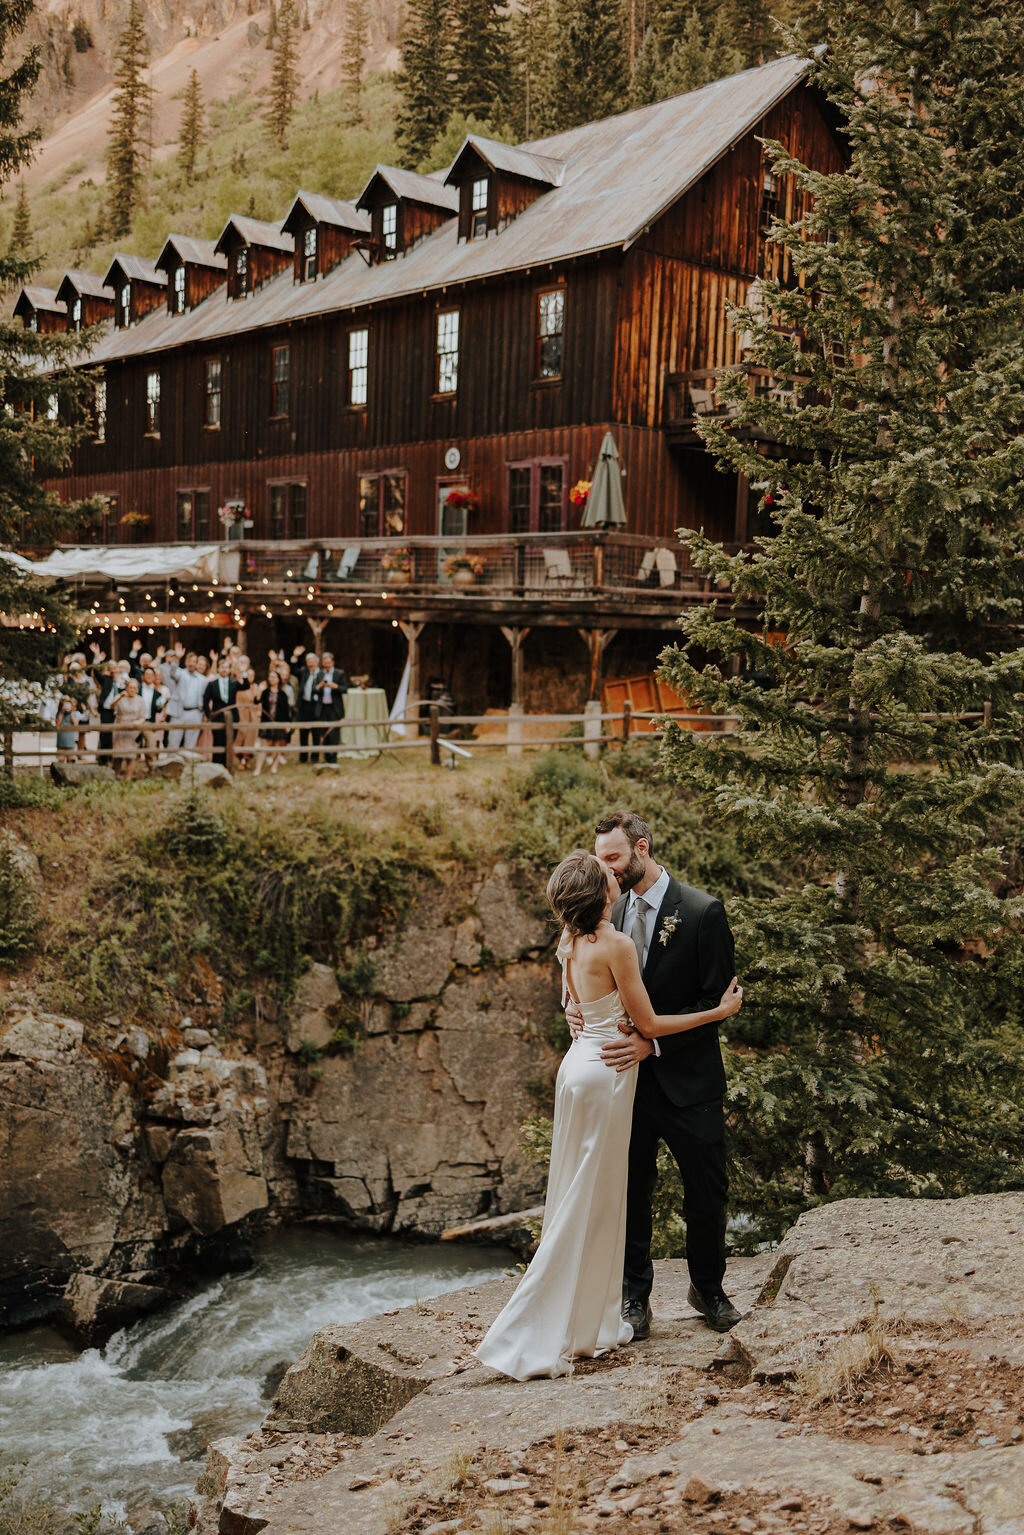 Silverton Colorado Rustic Wedding Venue Eureka Lodge